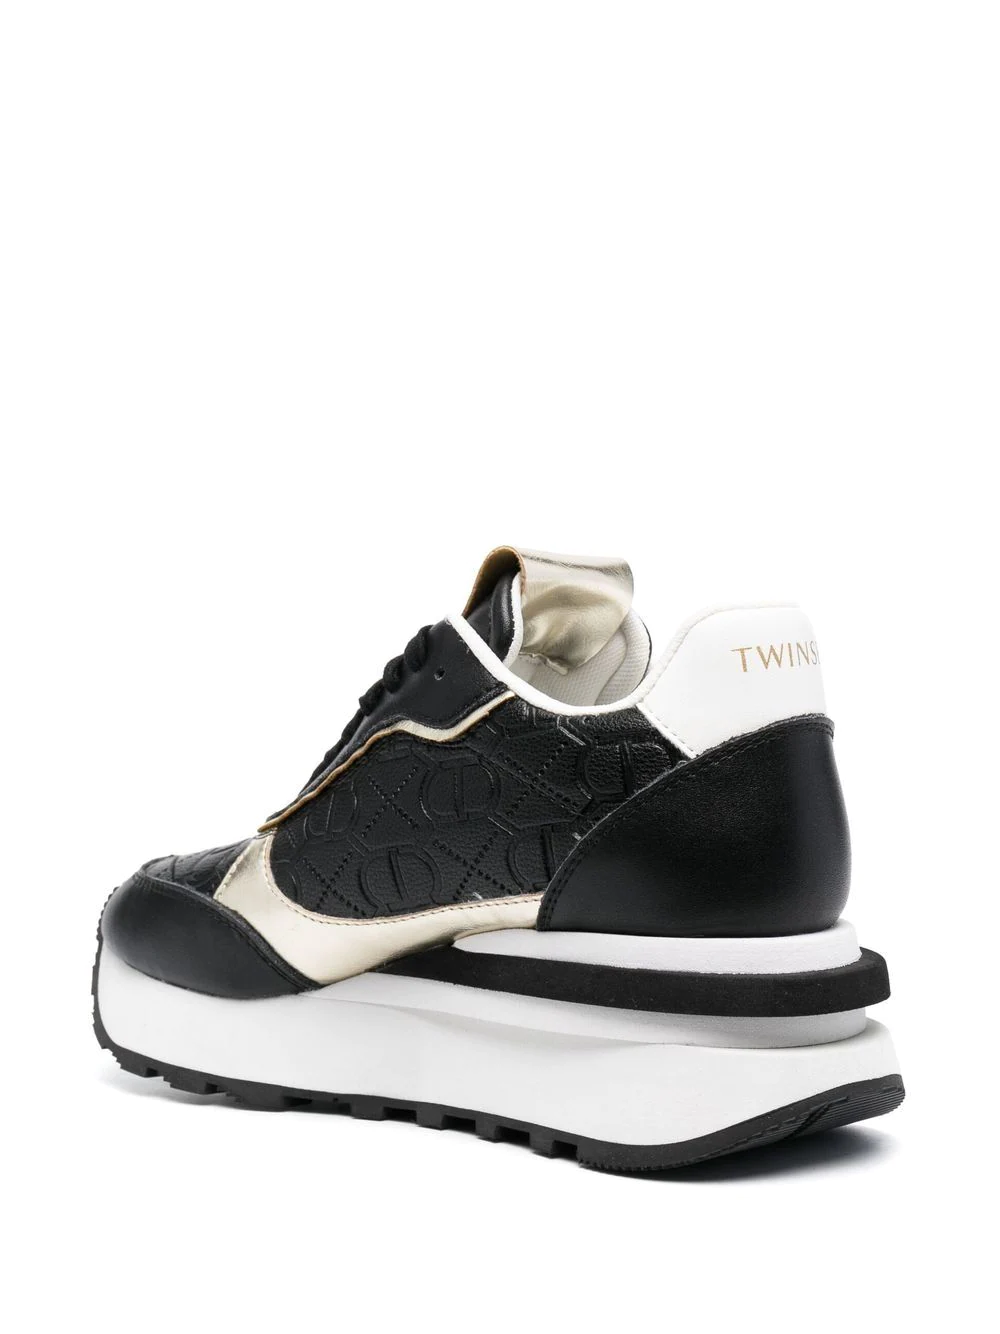 TWINSET sneaker en piel color negro y oro con logotipo en relieve - 5